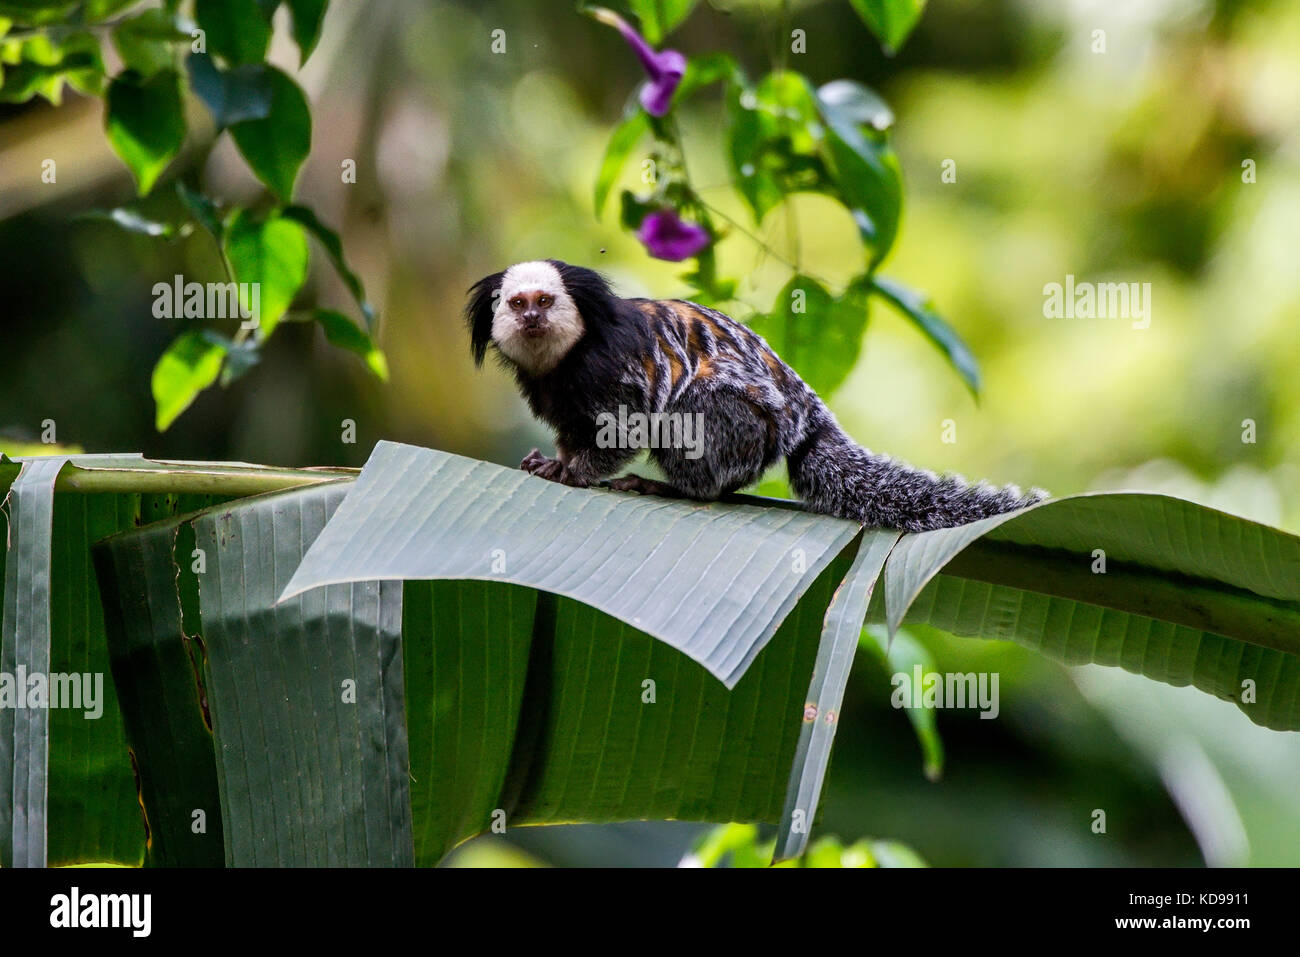 Macaco do sagui de Mico foto de stock. Imagem de pequeno - 27630008